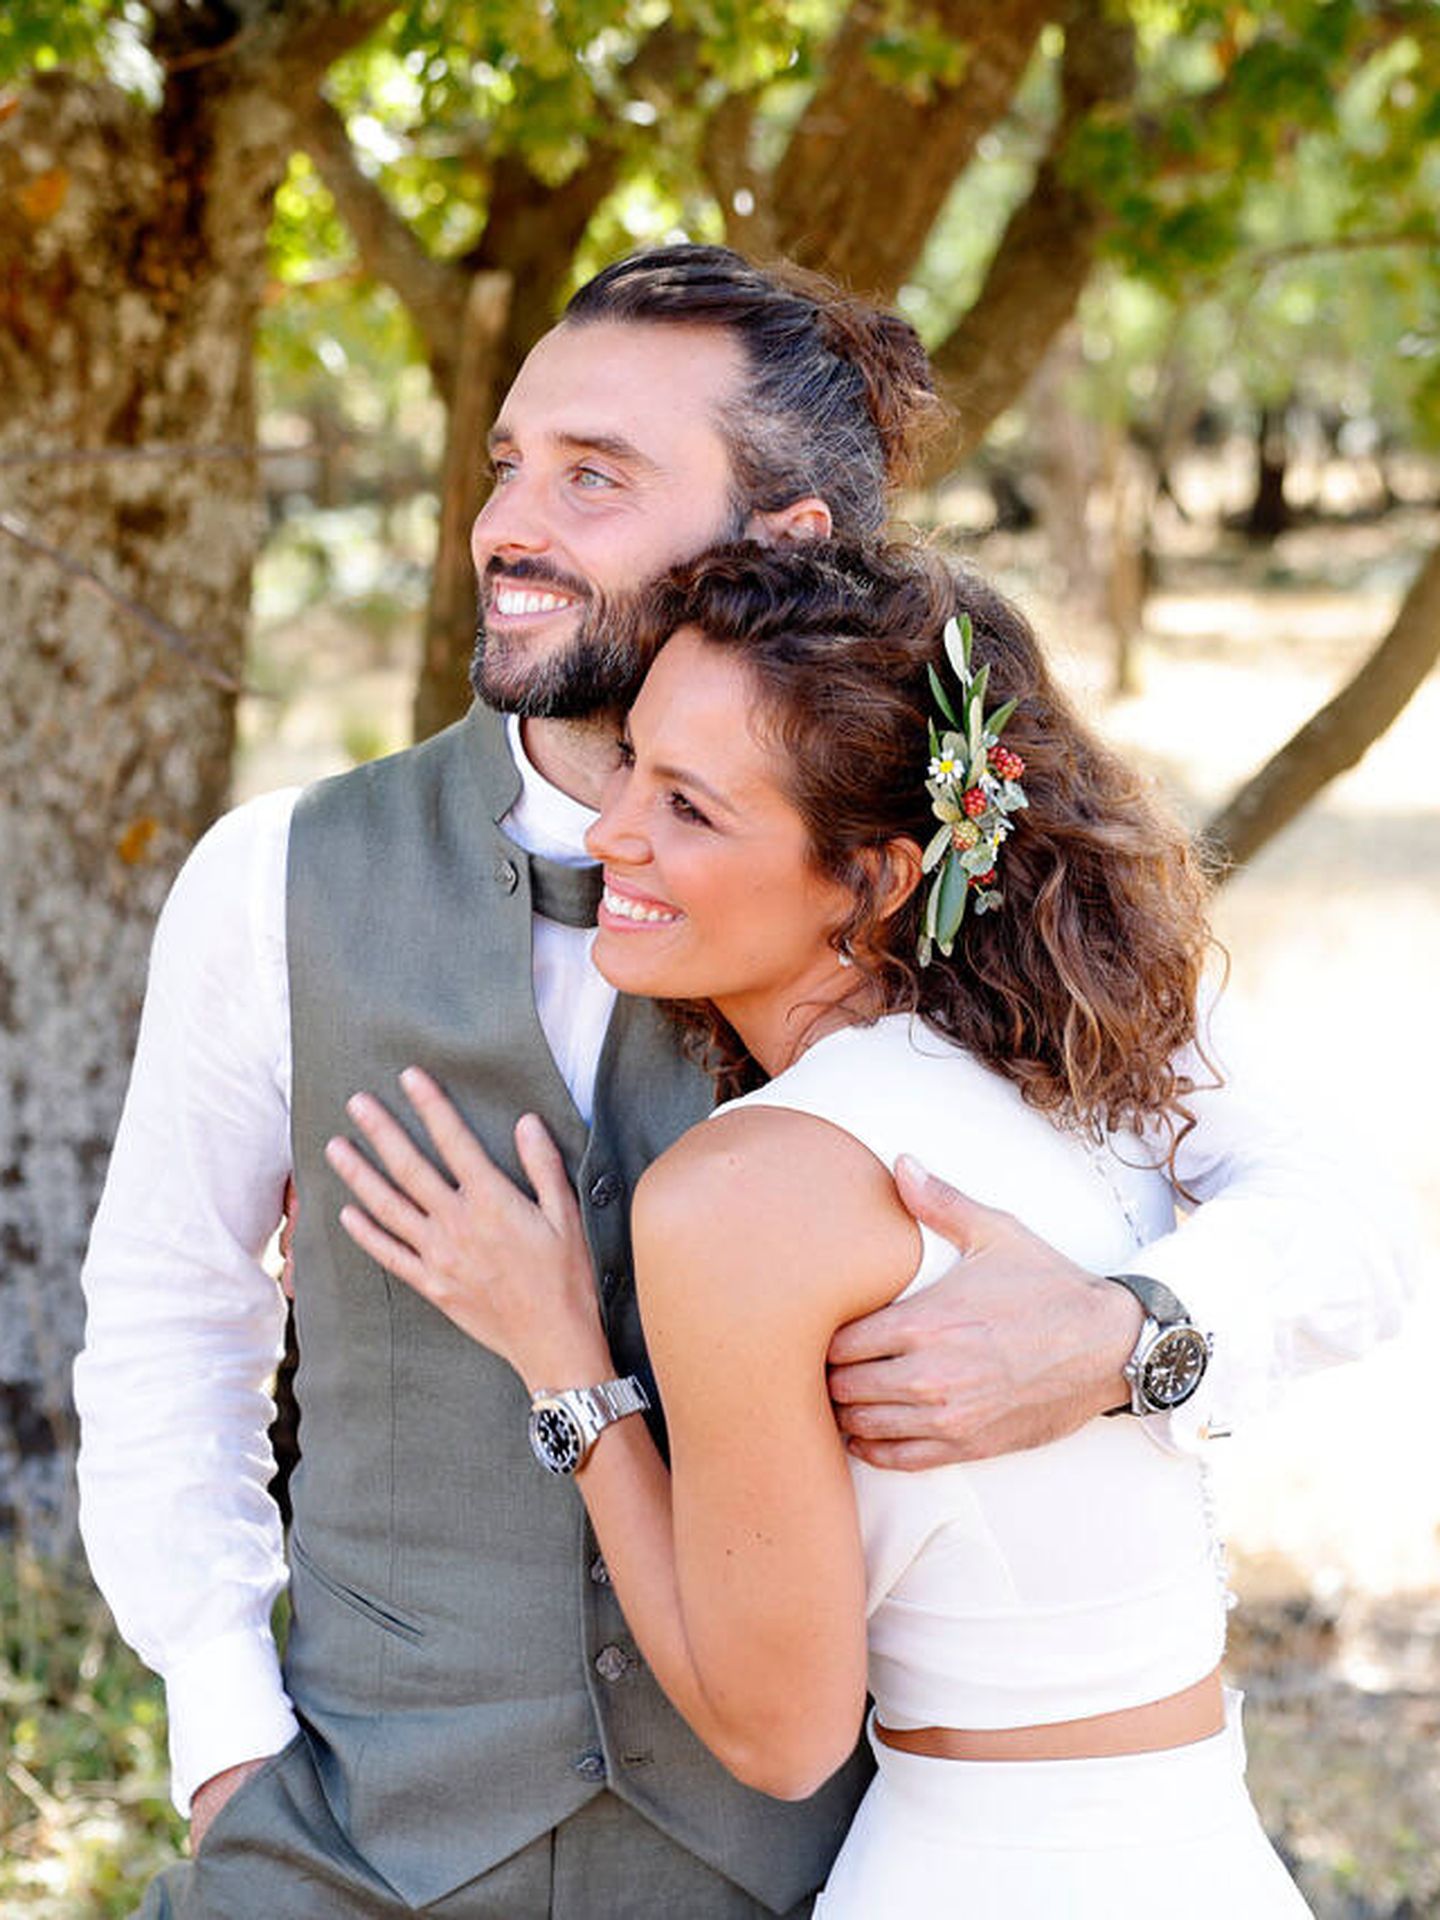 Laura Madrueño y Álvaro Puerto, en su boda campera. (Cortesía)